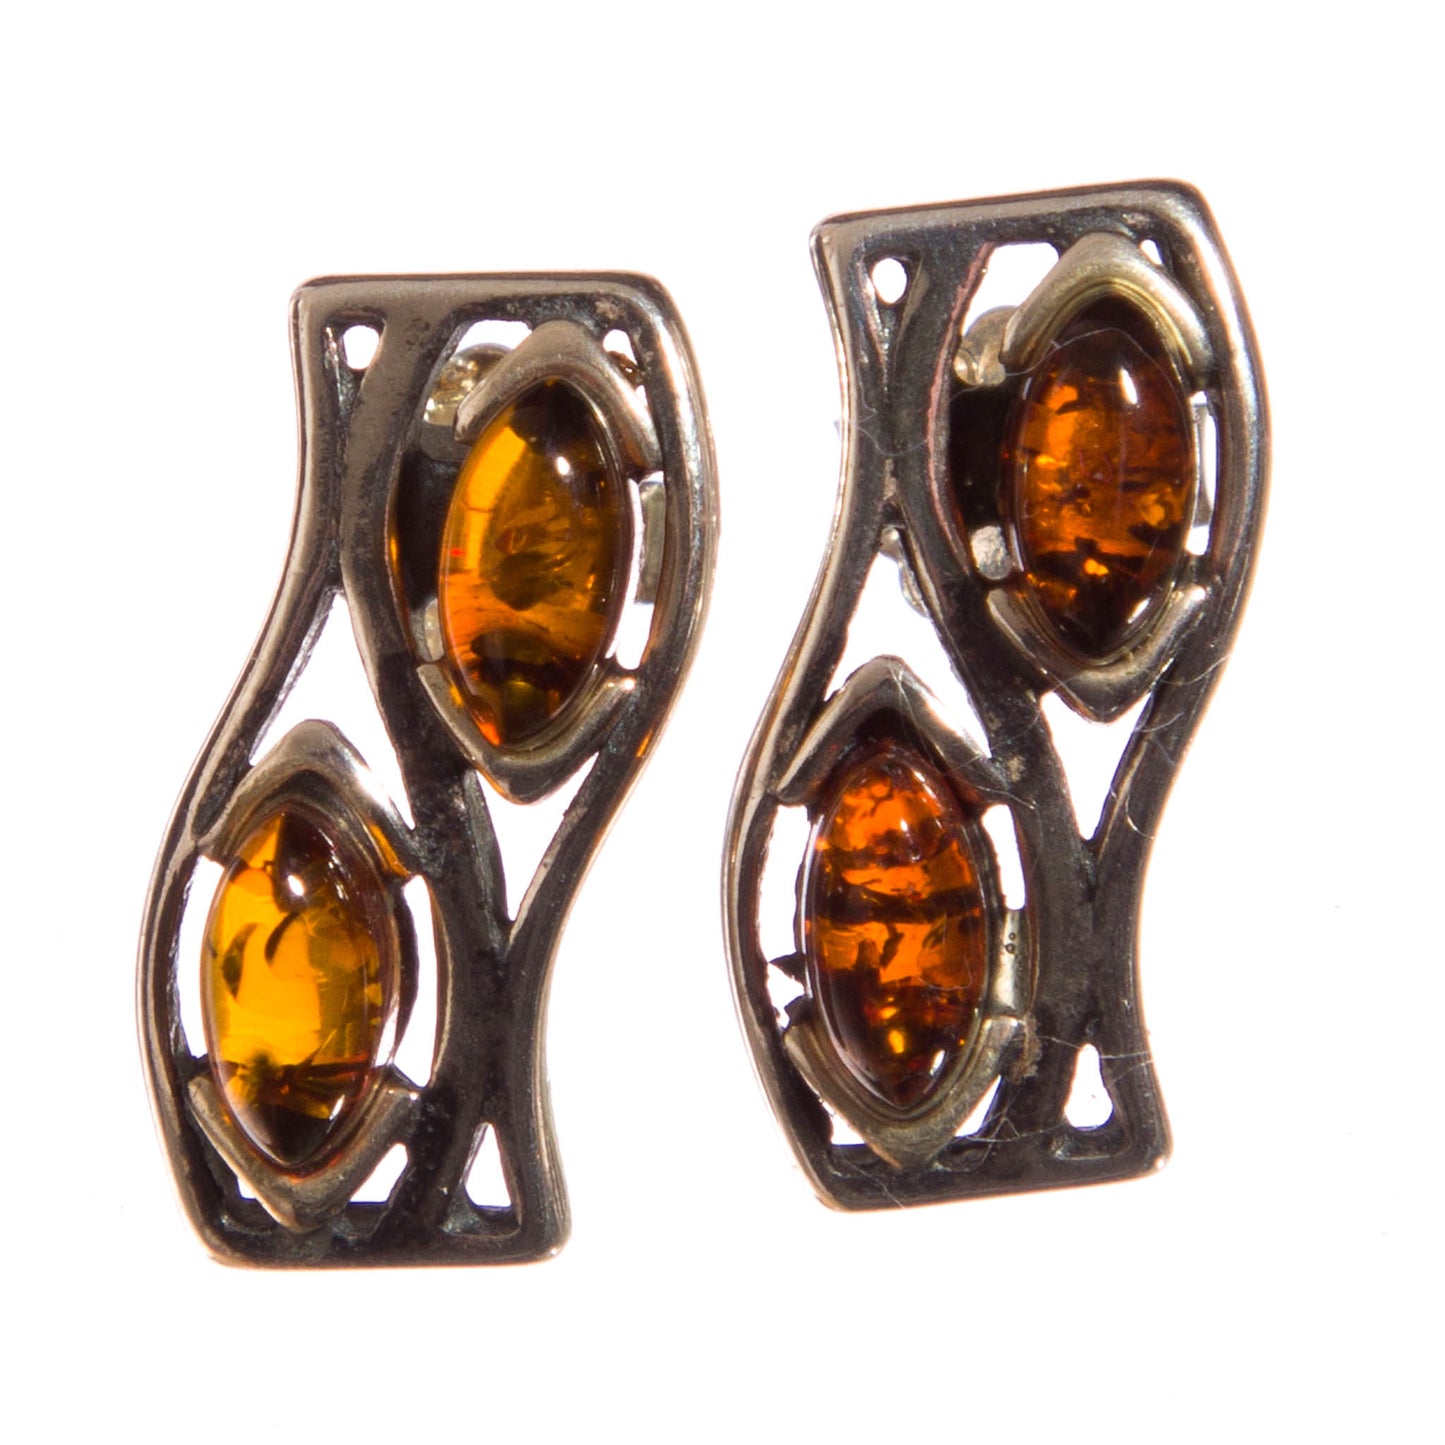 Amber set in Sterling Silver Earrings